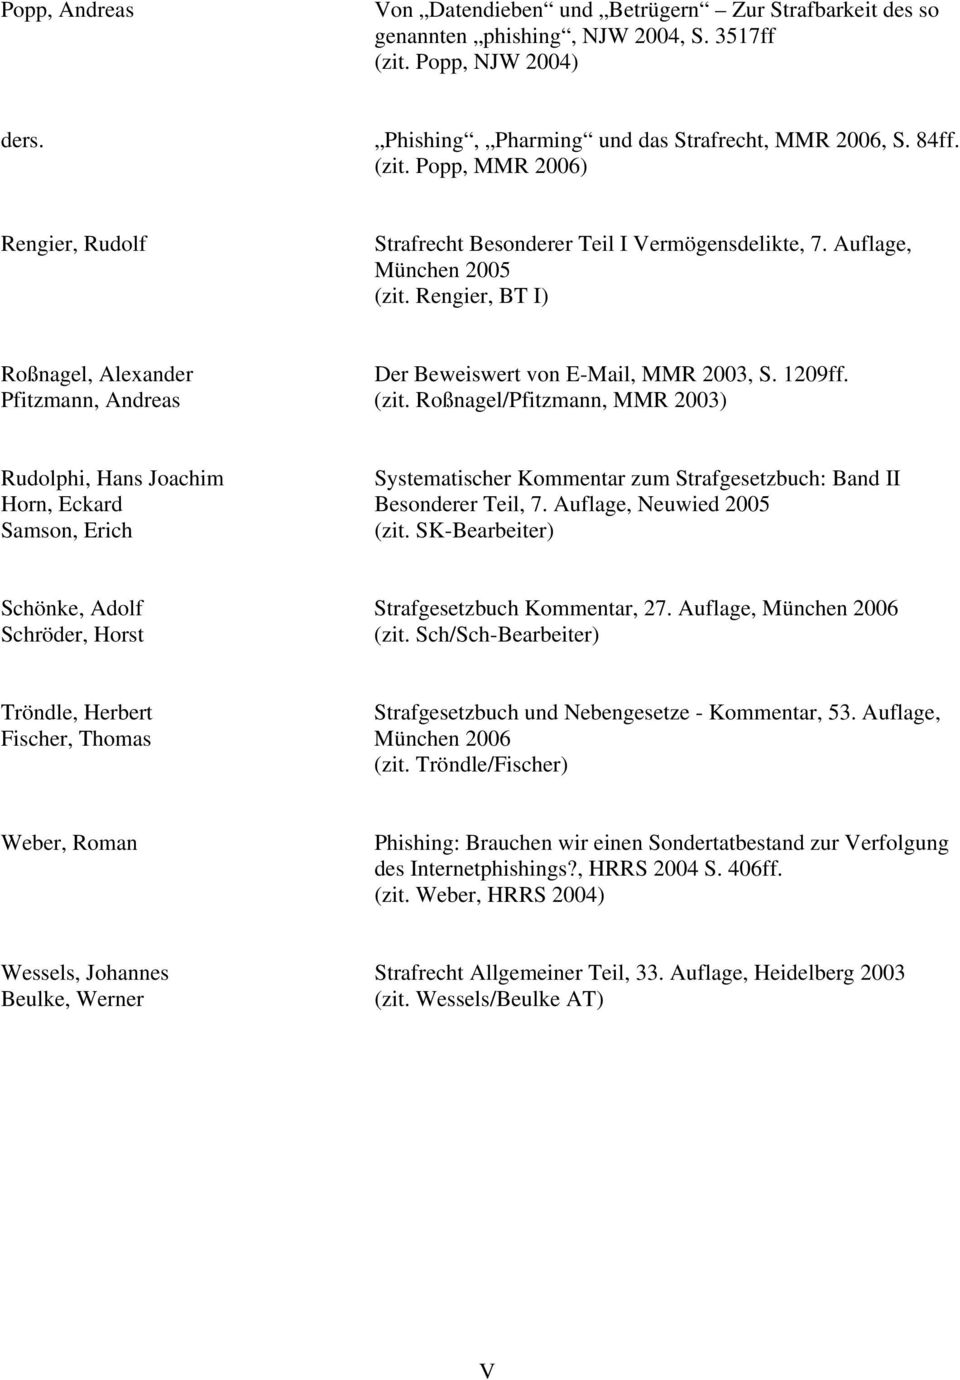 Roßnagel/Pfitzmann, MMR 2003) Rudolphi, Hans Joachim Systematischer Kommentar zum Strafgesetzbuch: Band II Horn, Eckard Besonderer Teil, 7. Auflage, Neuwied 2005 Samson, Erich (zit.